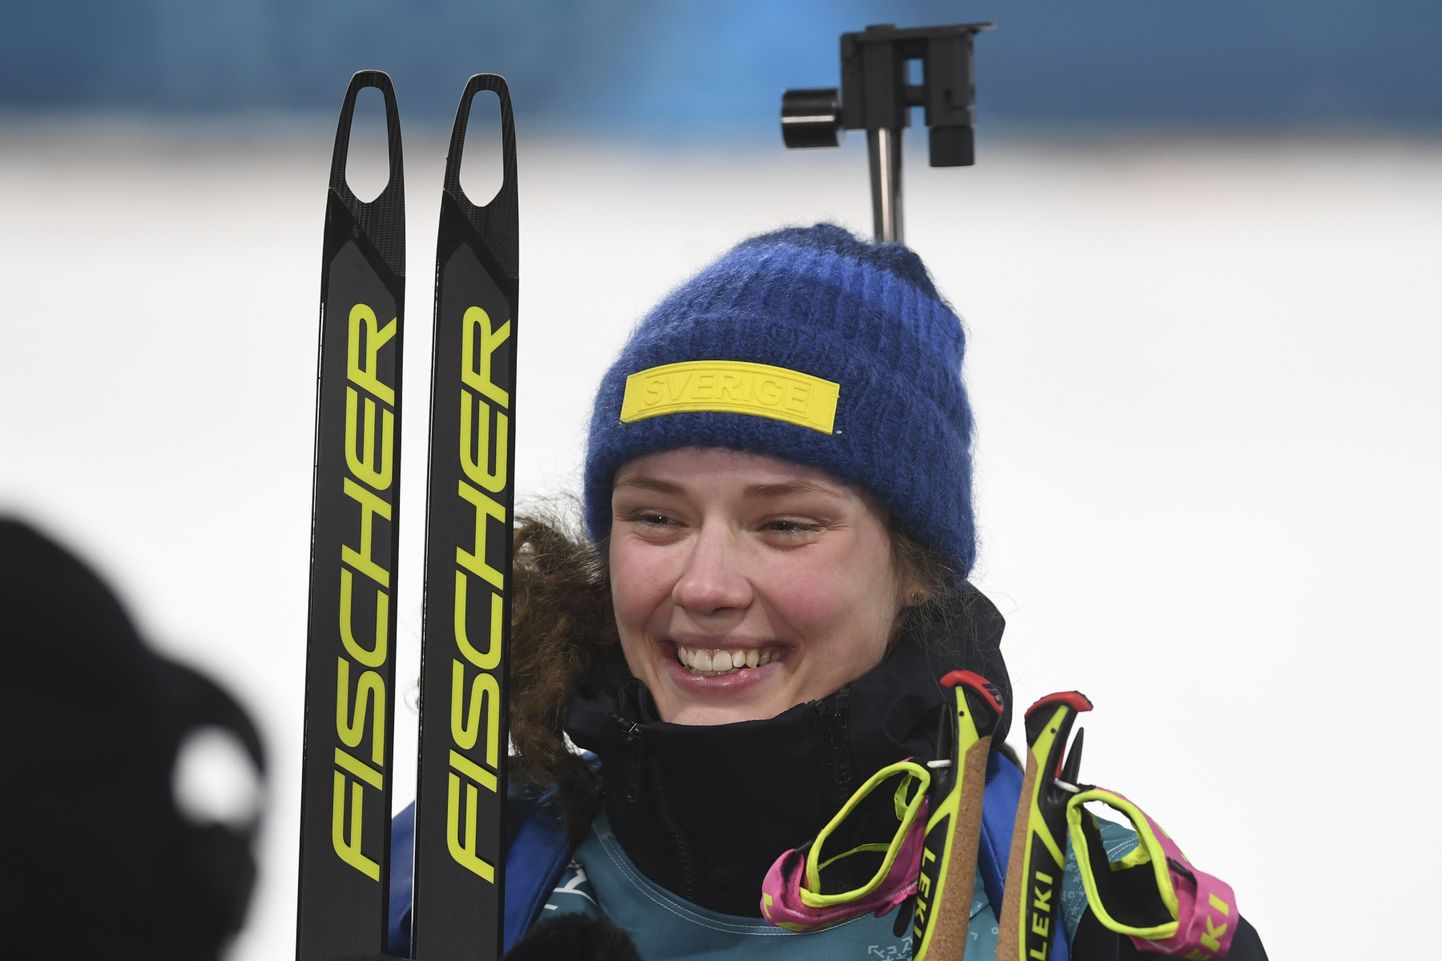 Laskesuusatamise naiste eraldistardist sõidu olümpiavõitja Hanna Öberg.